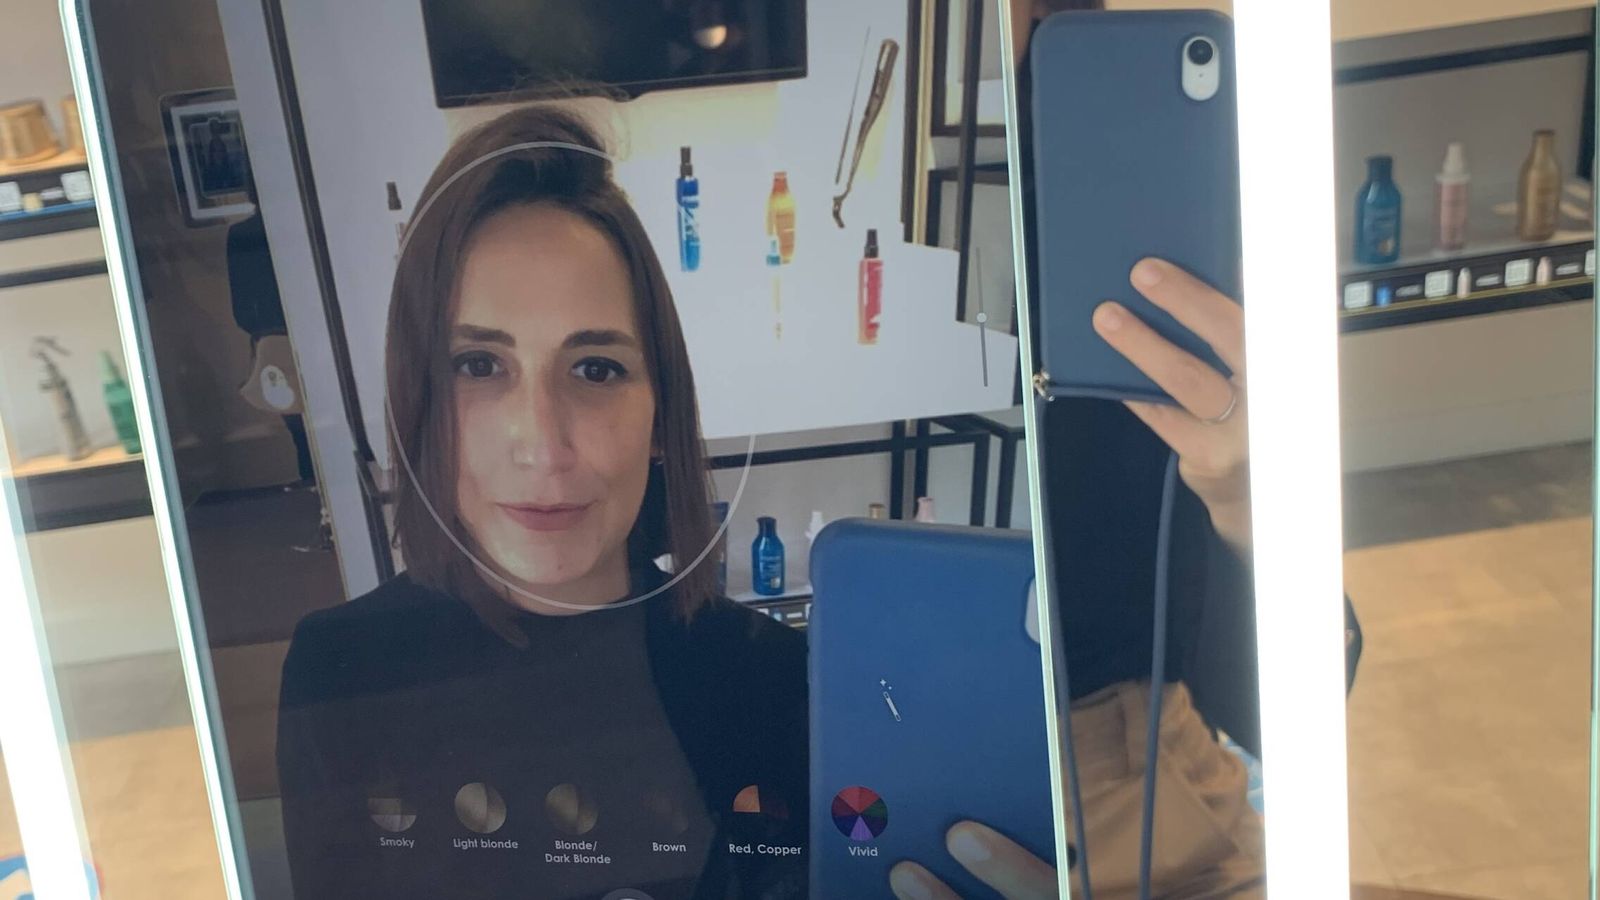 El reconocimiento facial de Amazon Salon muestra y sugiere distintos tintes y cortes de pelo. (Celia Maza)